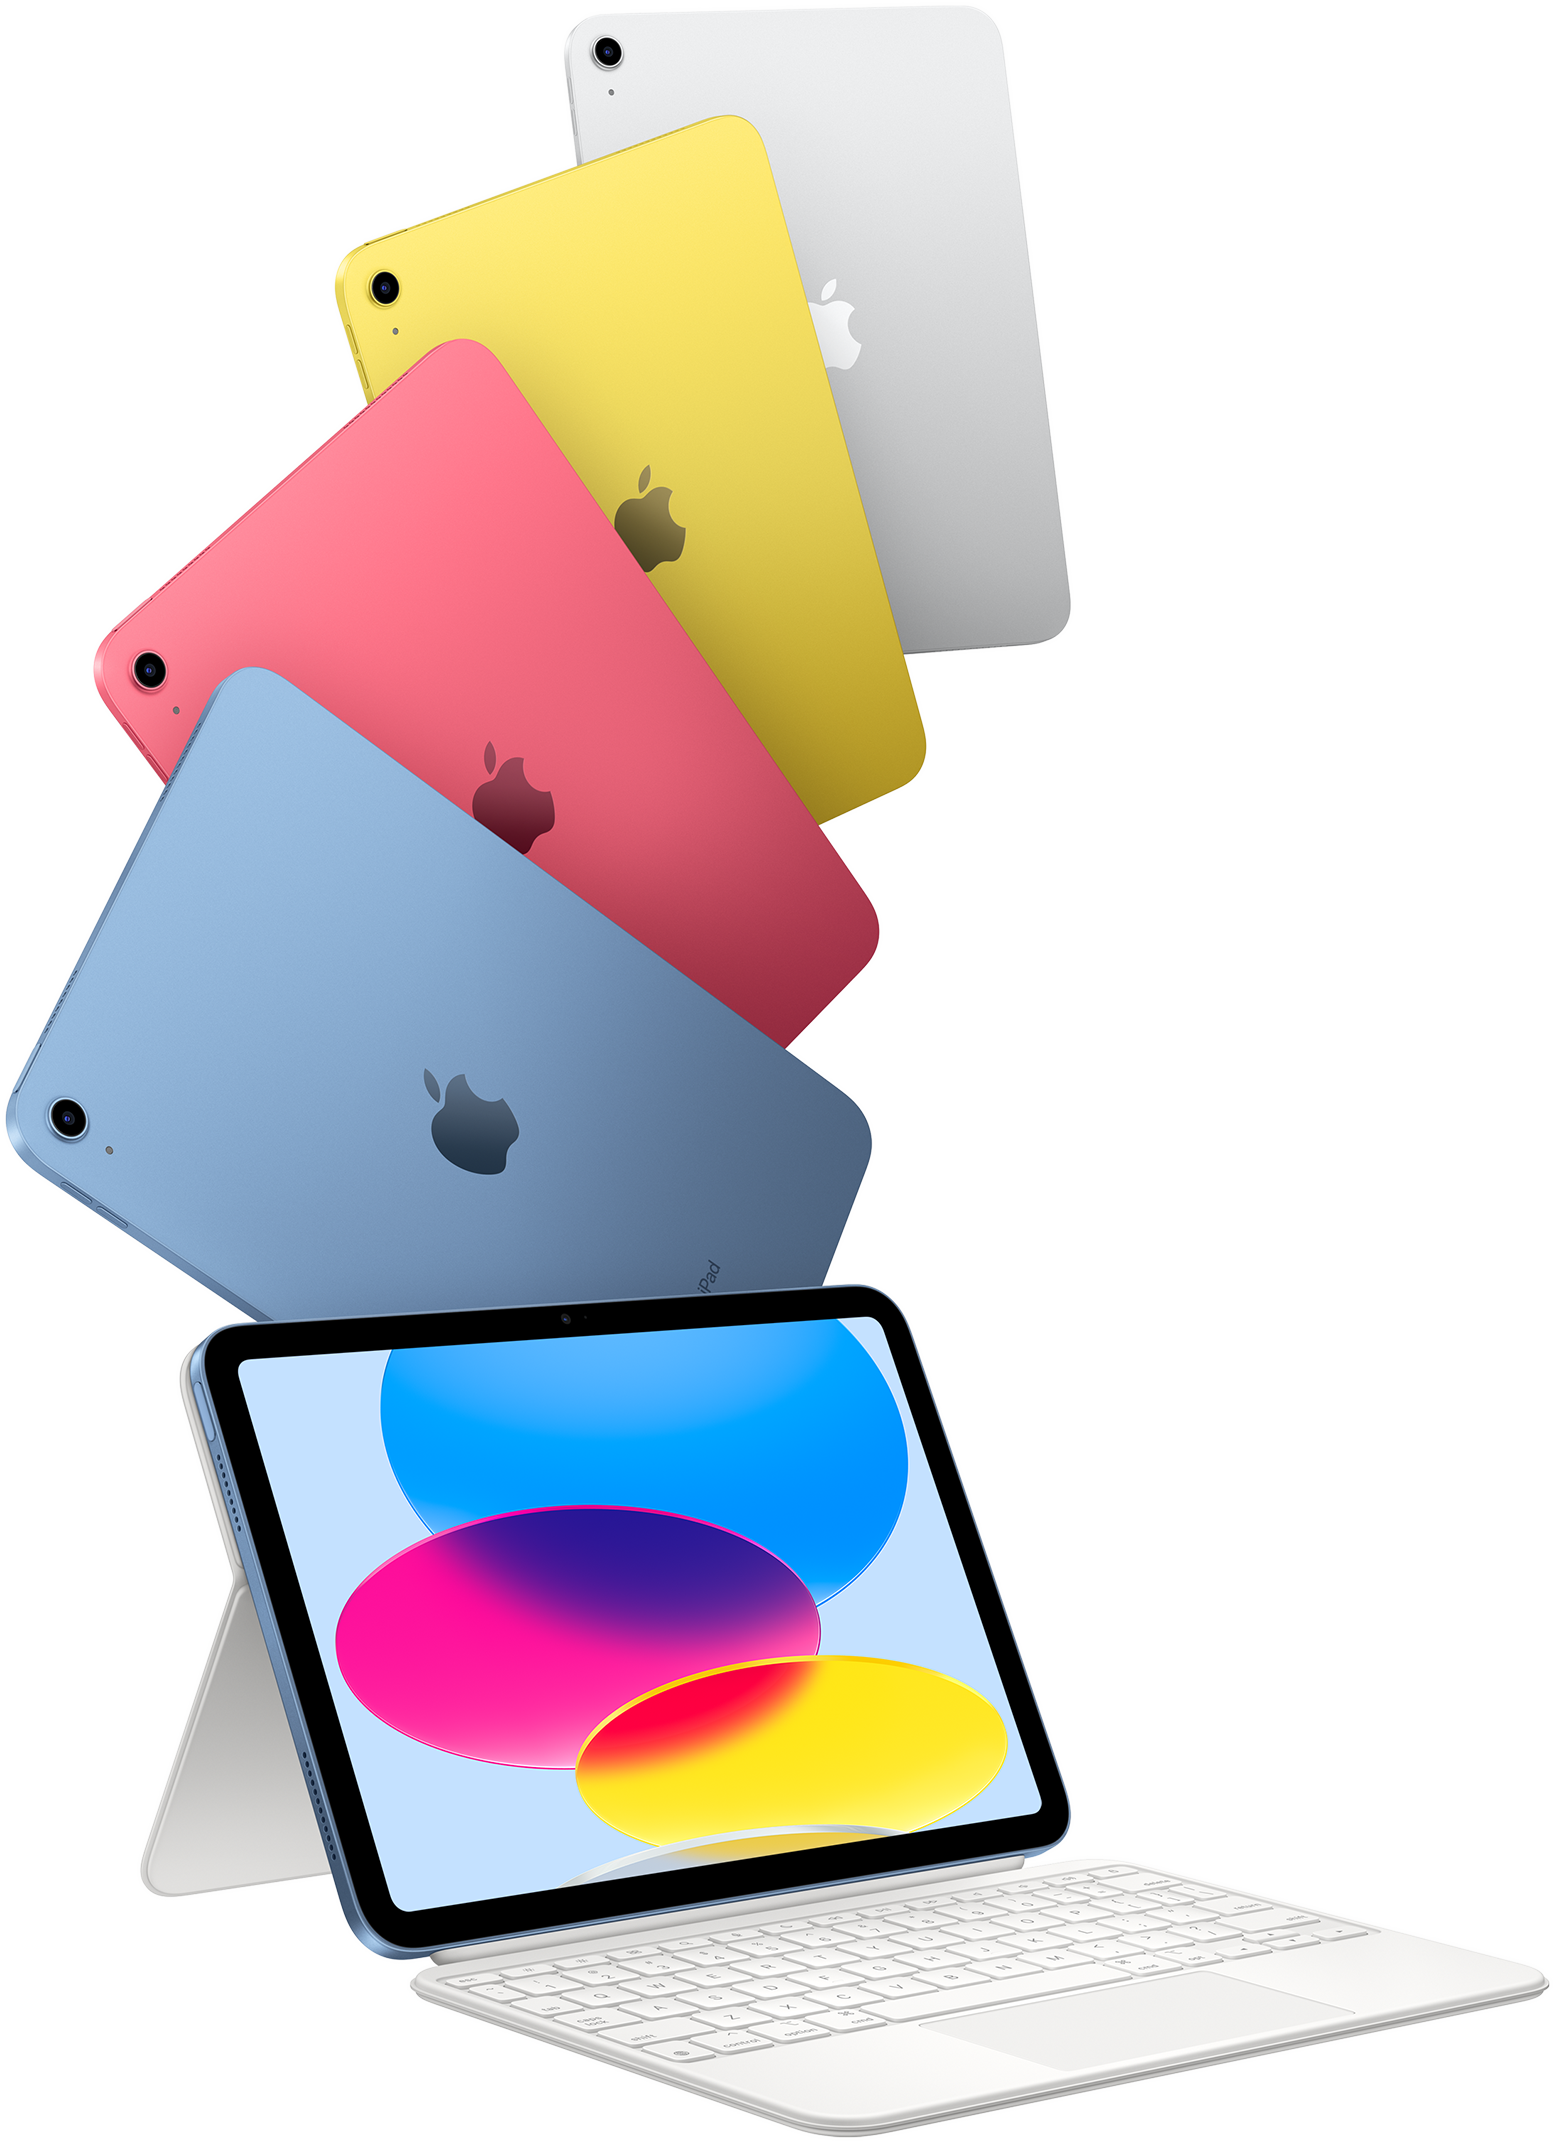 iPad sinisenä, pinkkinä, keltaisena ja hopeanvärisenä ja yhteen iPadiin liitettynä Magic Keyboard Folio.